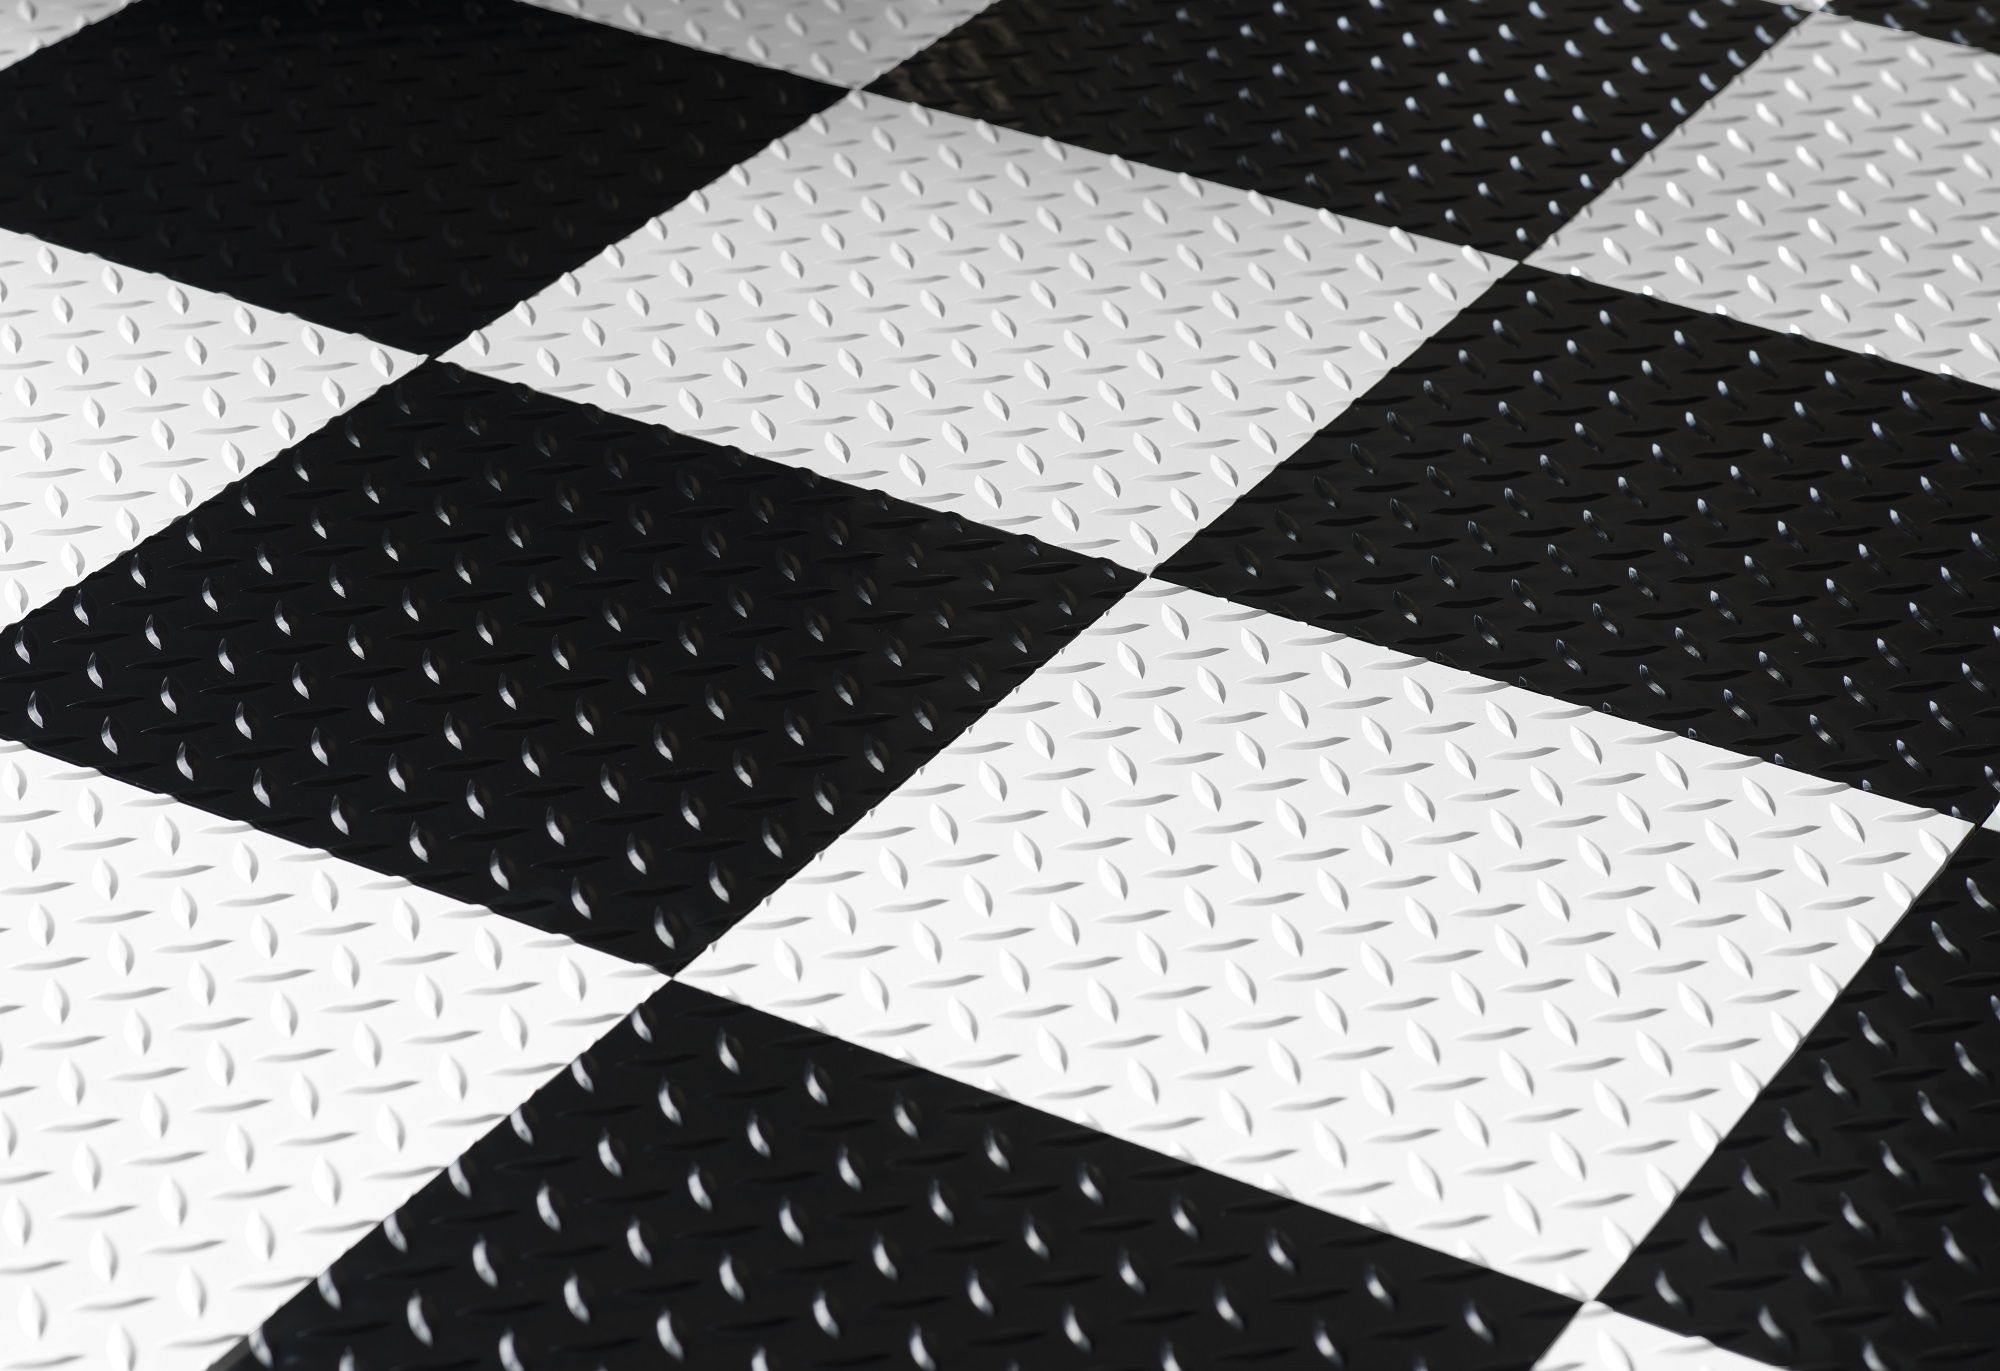 G-Floor 12" x 12" Diamond Tread RaceDay Peel and Stick Tile - Midnight Black 20-Pack - image 2 of 4